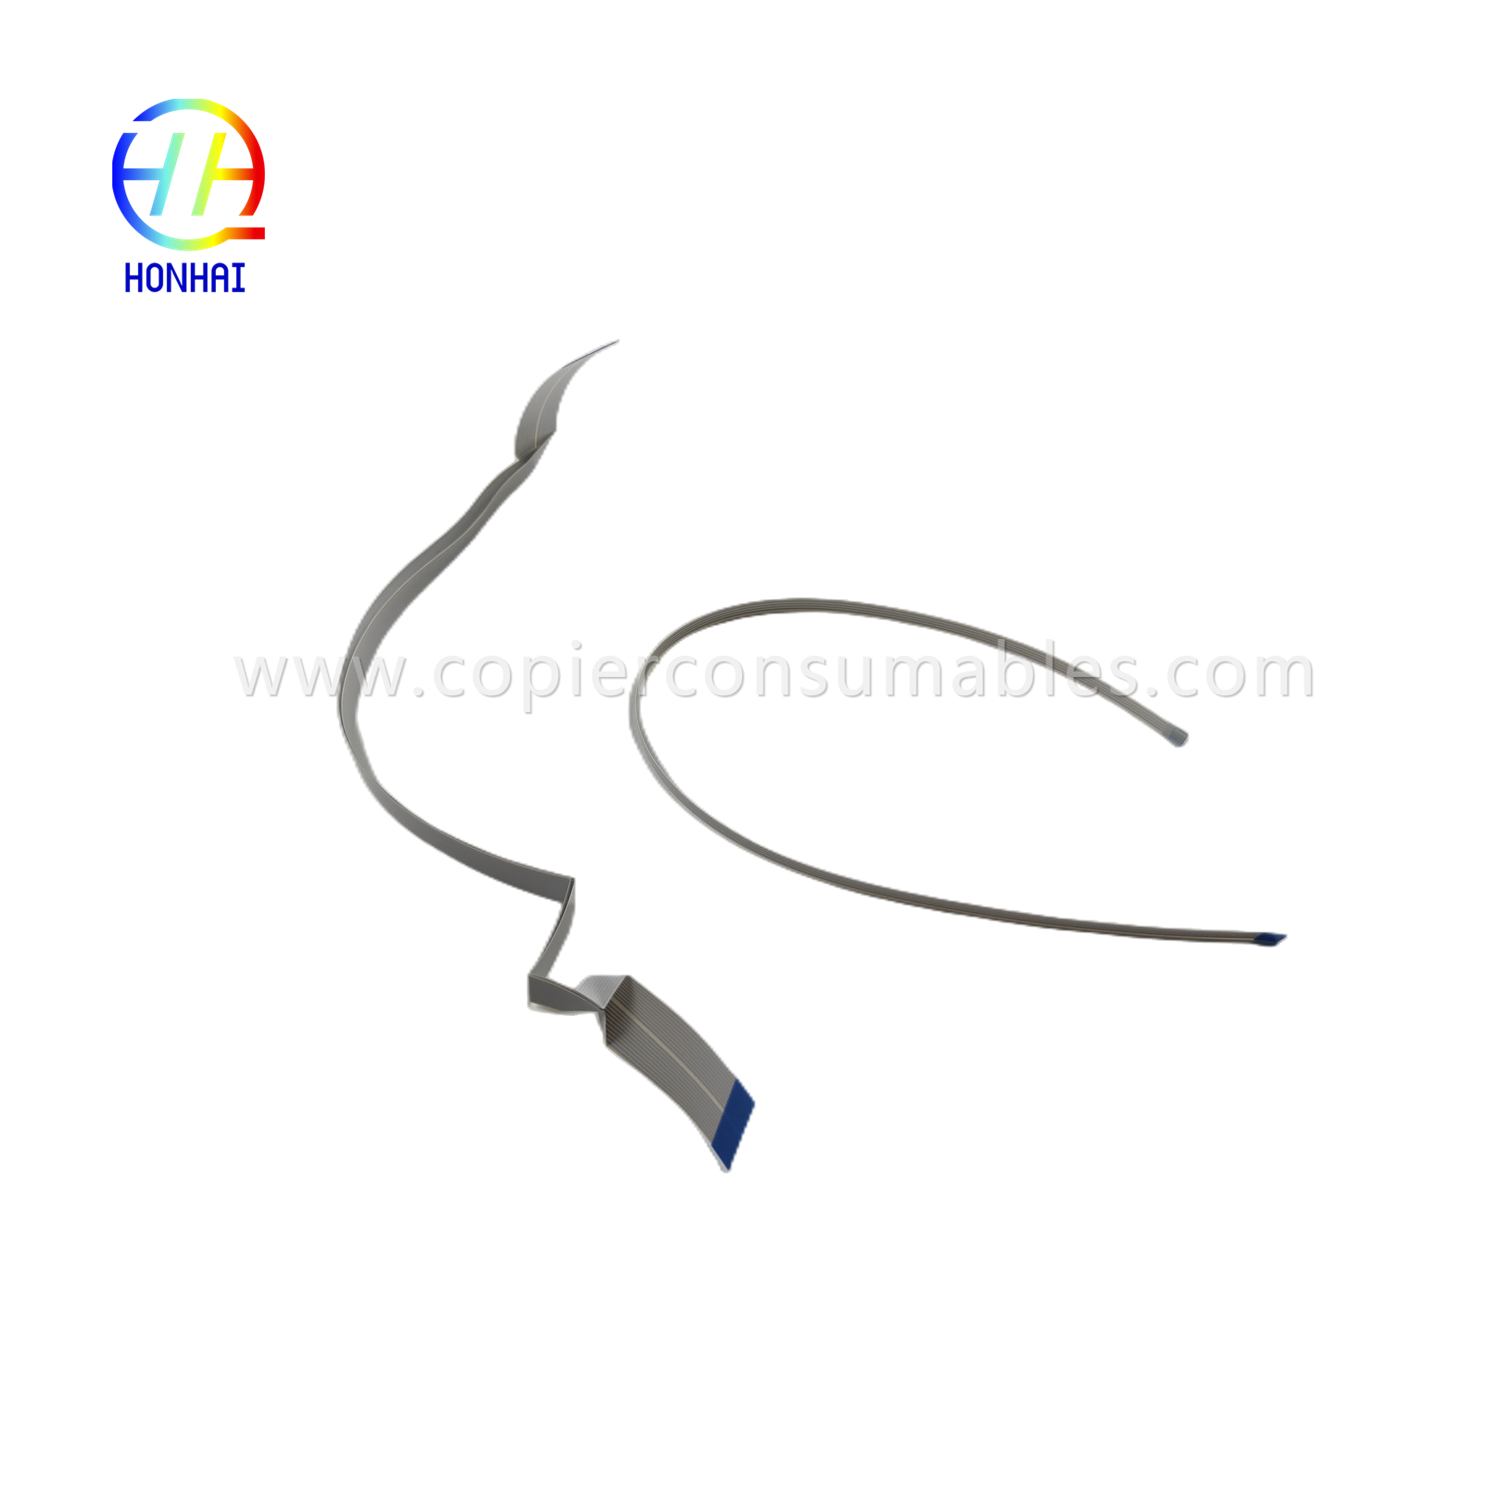 https://c585.goodo.net/flex-cable-for-epson-l1110-l3110-l3210-l3150-l3250-l5190-l5290-head-cable-product/